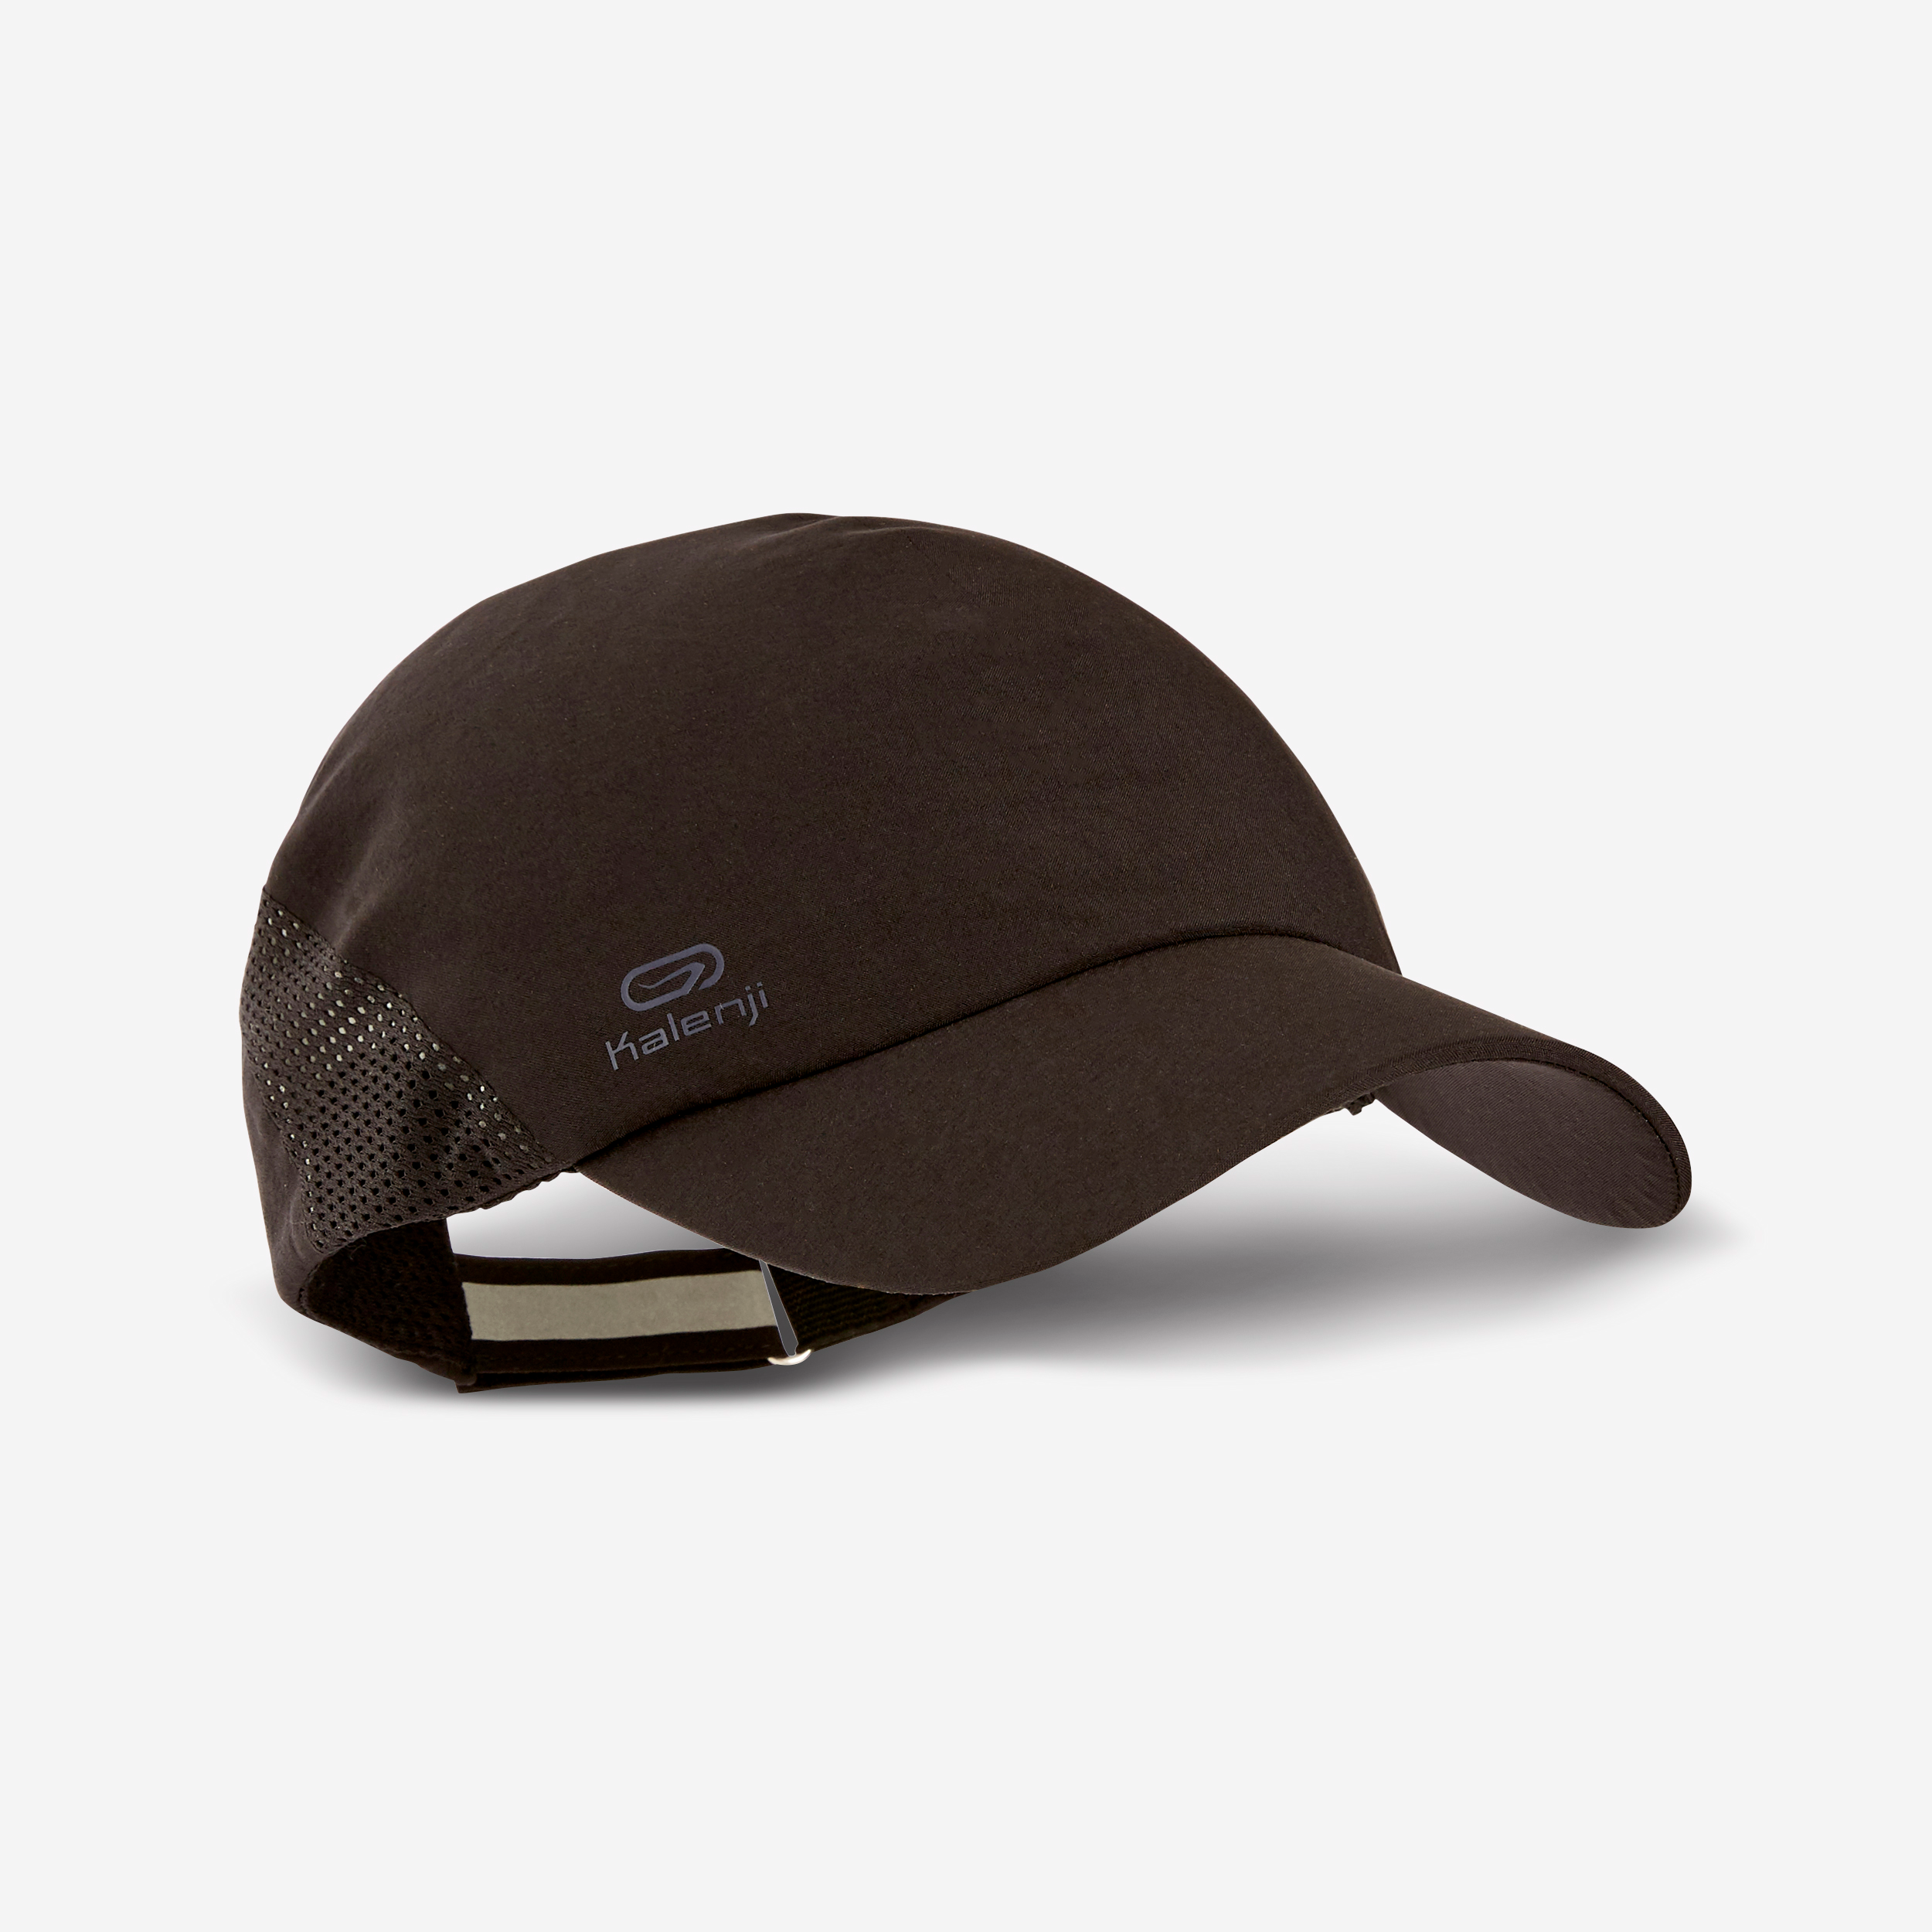 Casquettes et bonnets dakar pour accessoires à acheter en ligne